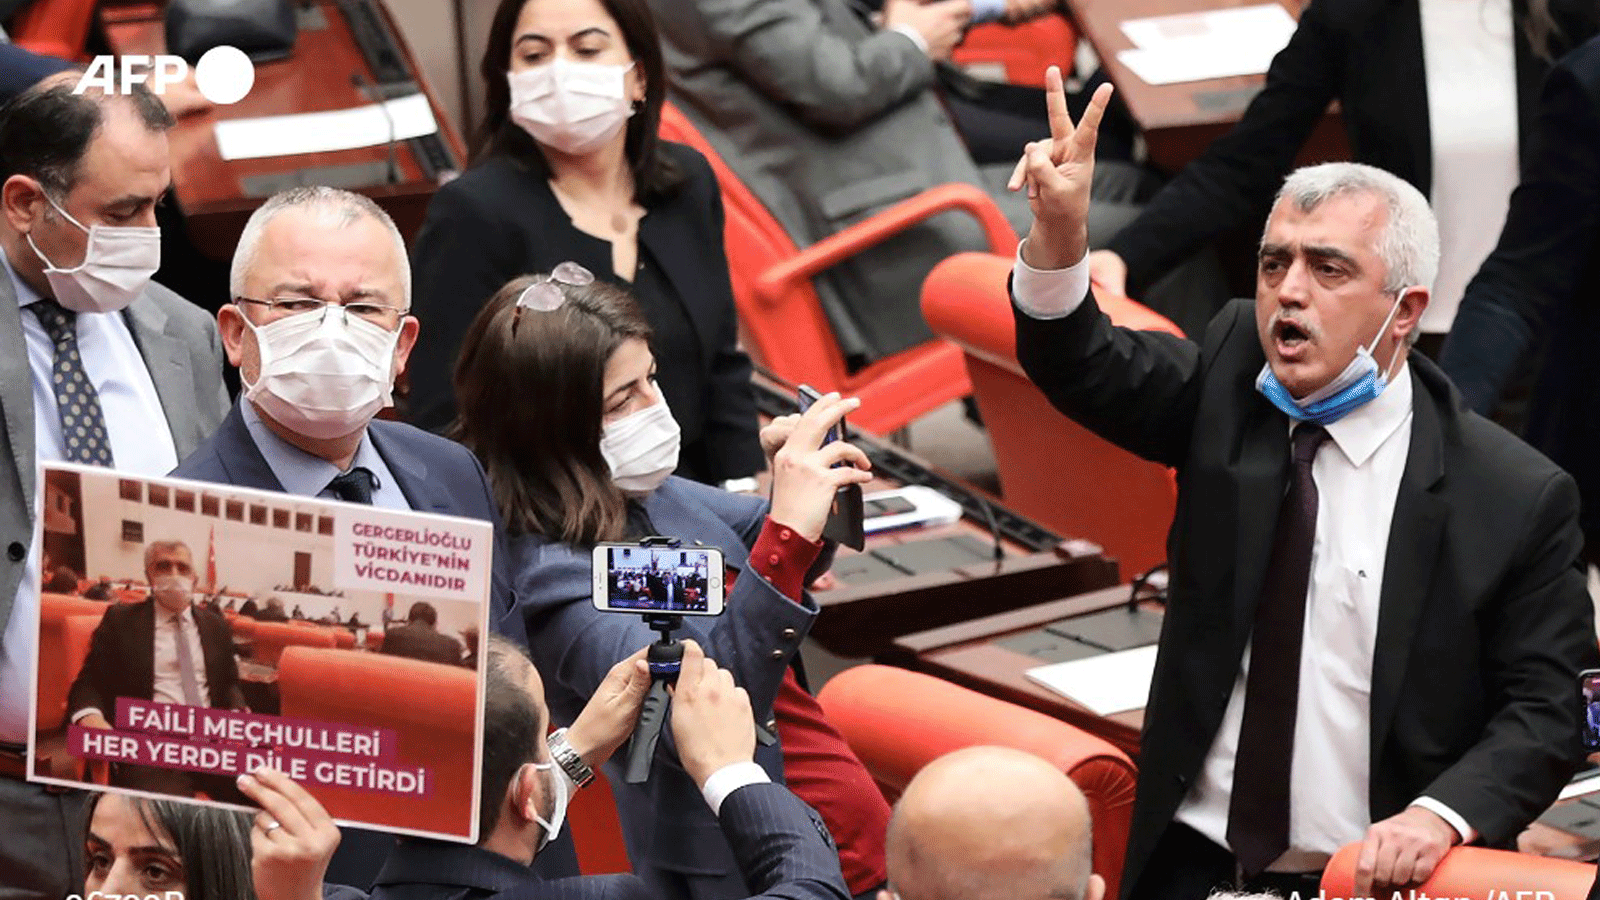 عمر فاروق جرغيرلي أوغلو، عضو البرلمان التركي عن حزب الشعوب الديمقراطي، وهو محاط بمشرعين يصفقون ويلوحون باللافتات بعد إقالته من خلال التصويت في البرلمان التركي في أنقرة، بتاريخ 17 آذار/مارس 2021